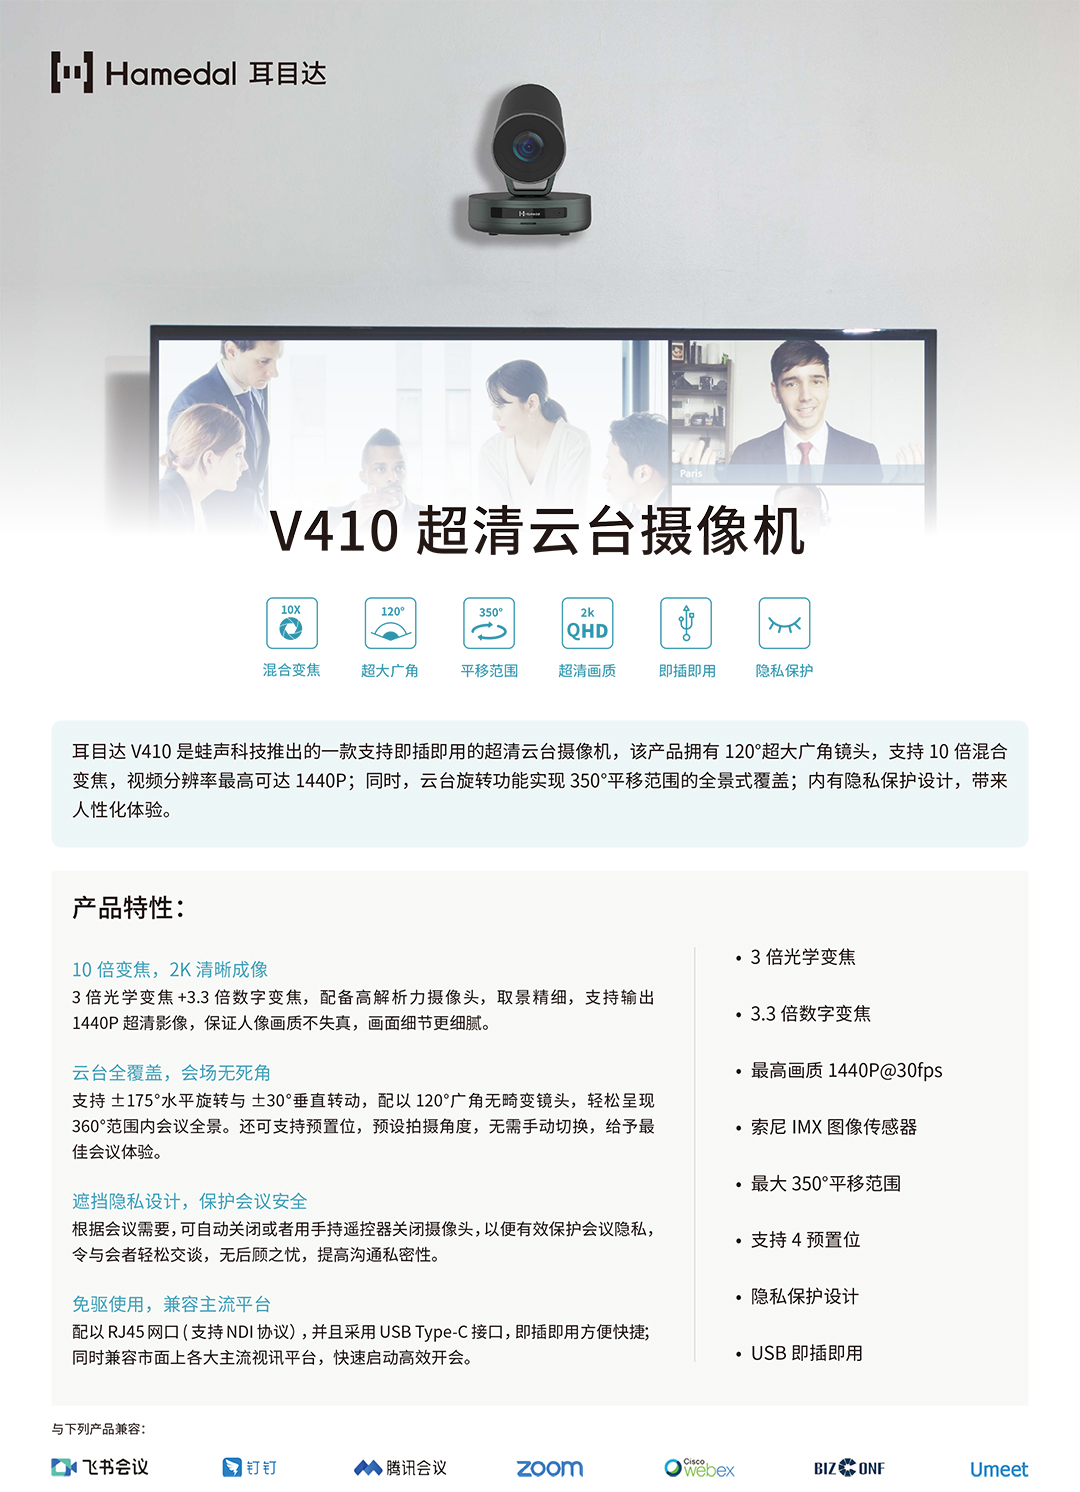 耳目达V410产品手册_v22-1.jpg